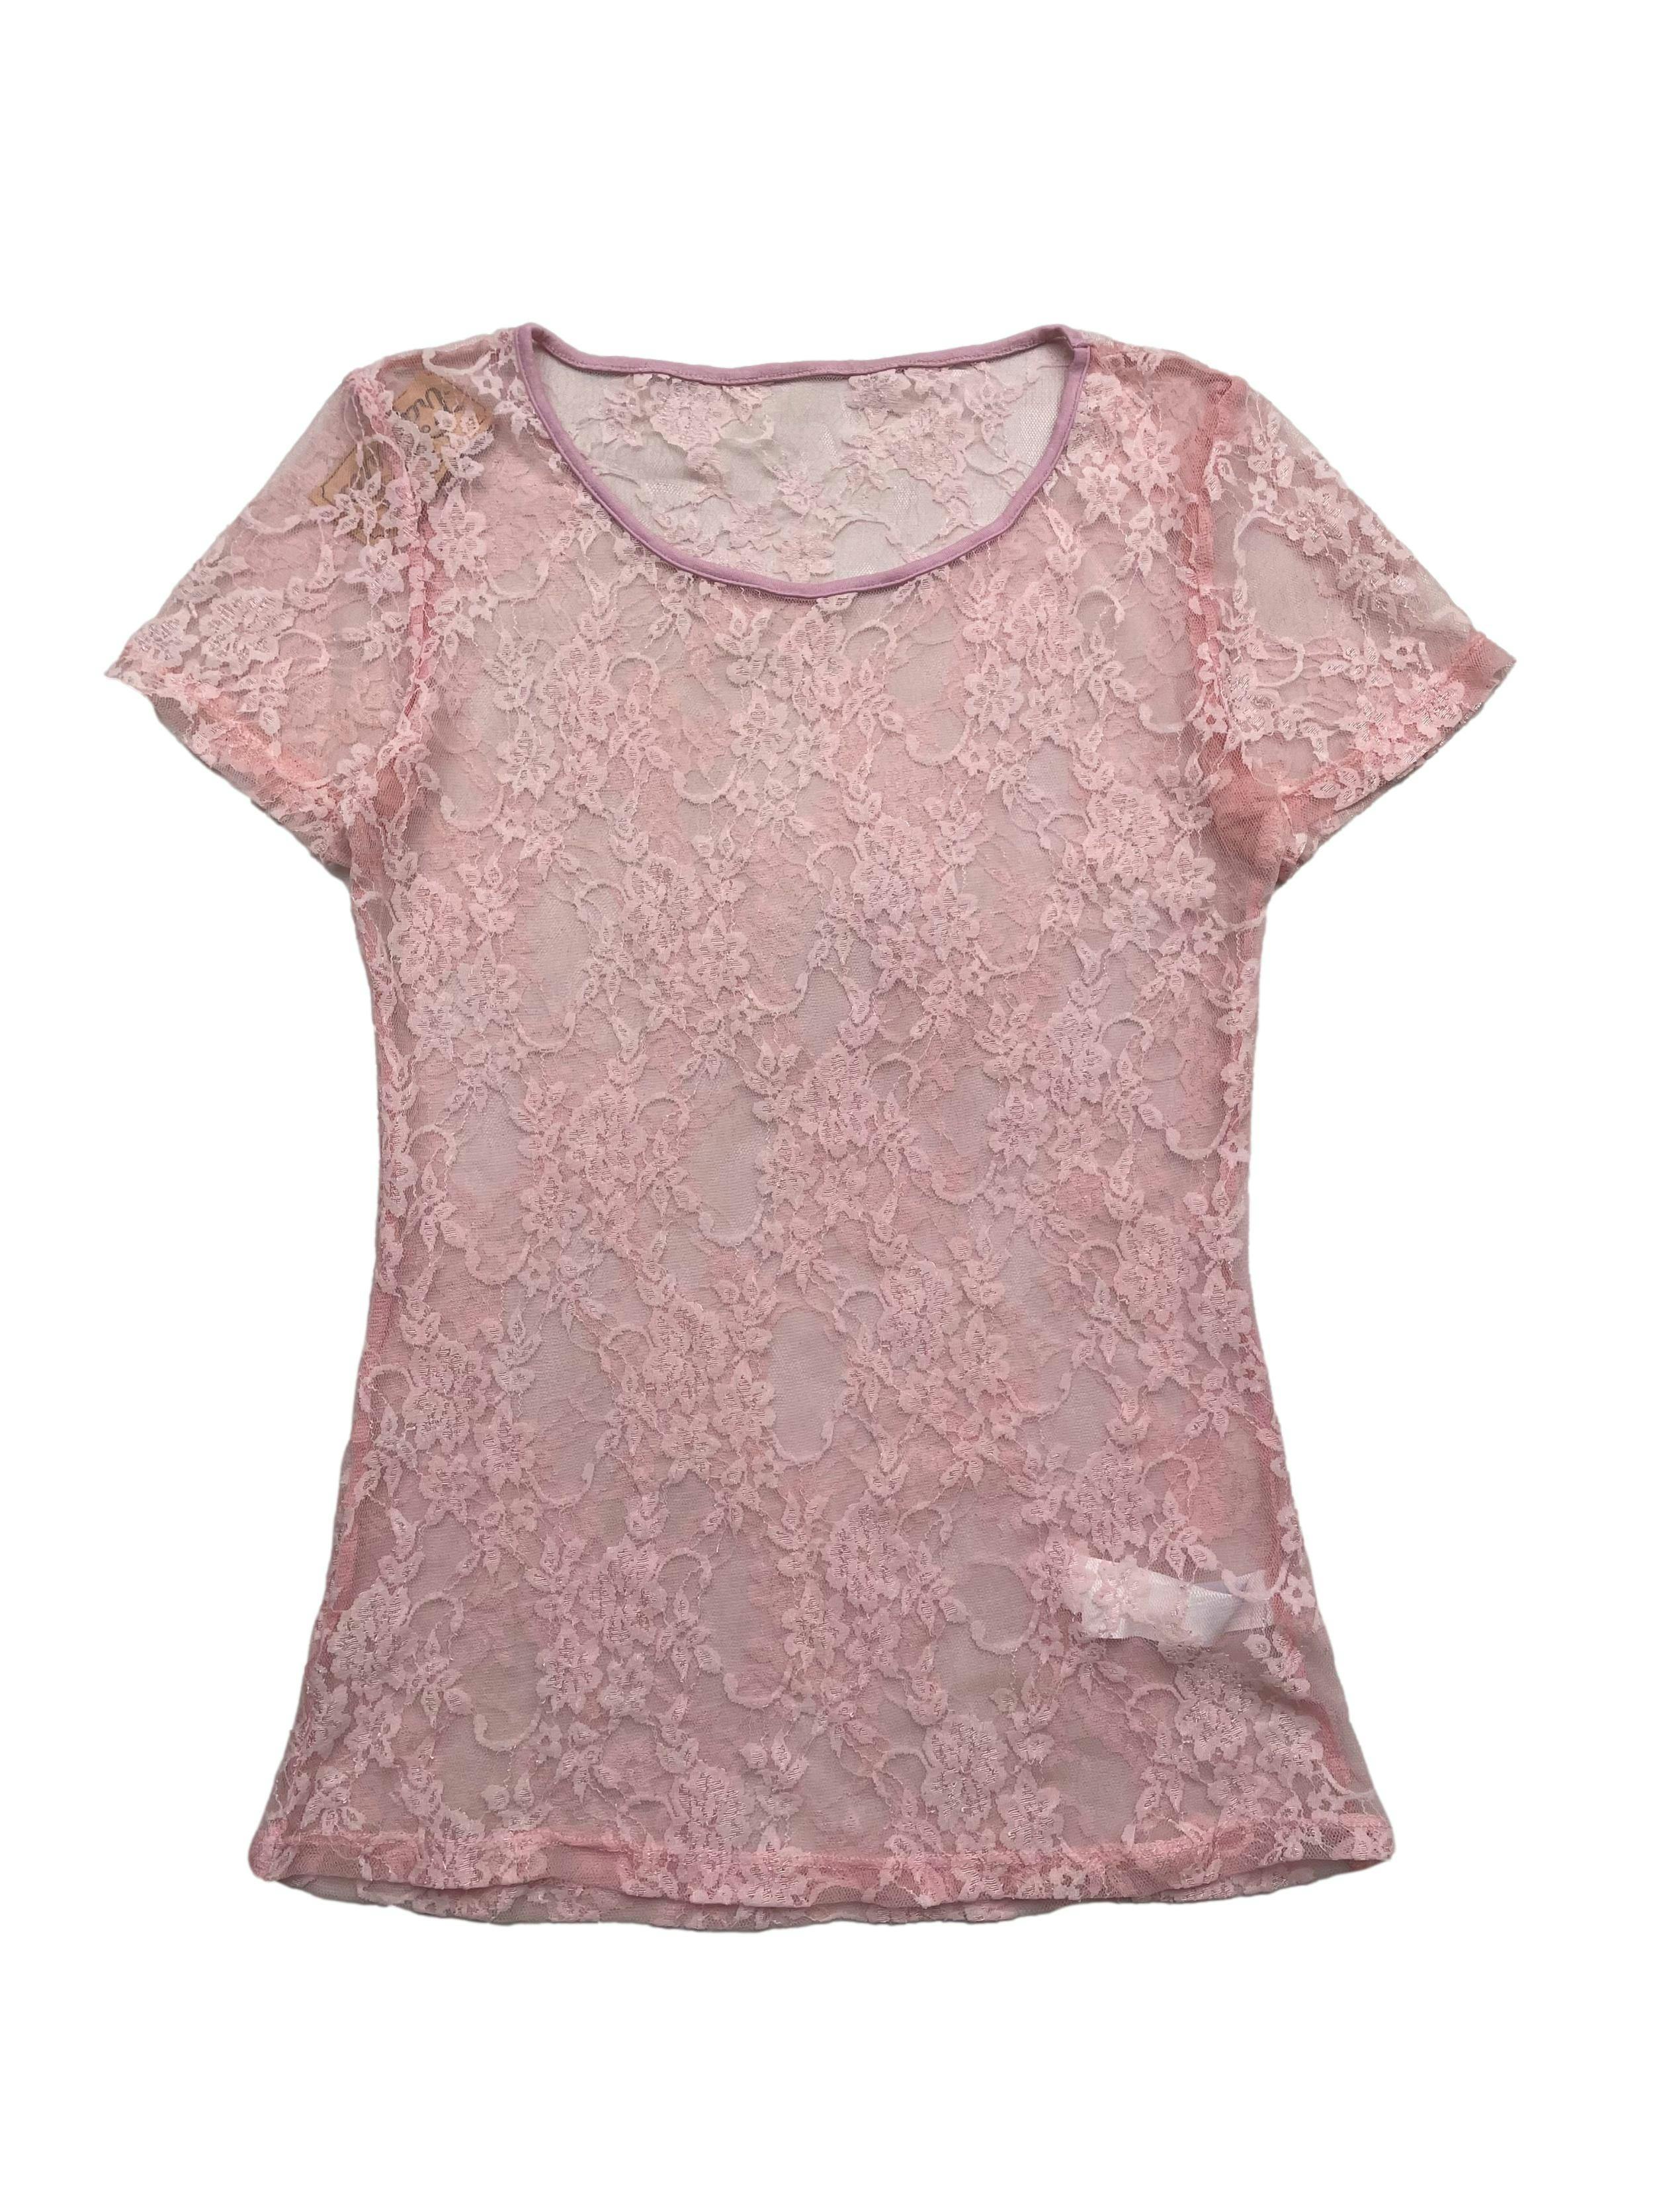 Polo palo rosa de mesh con estampado floral y textura de encaje. Busto 82 cm sin estirar, Largo 60cm.